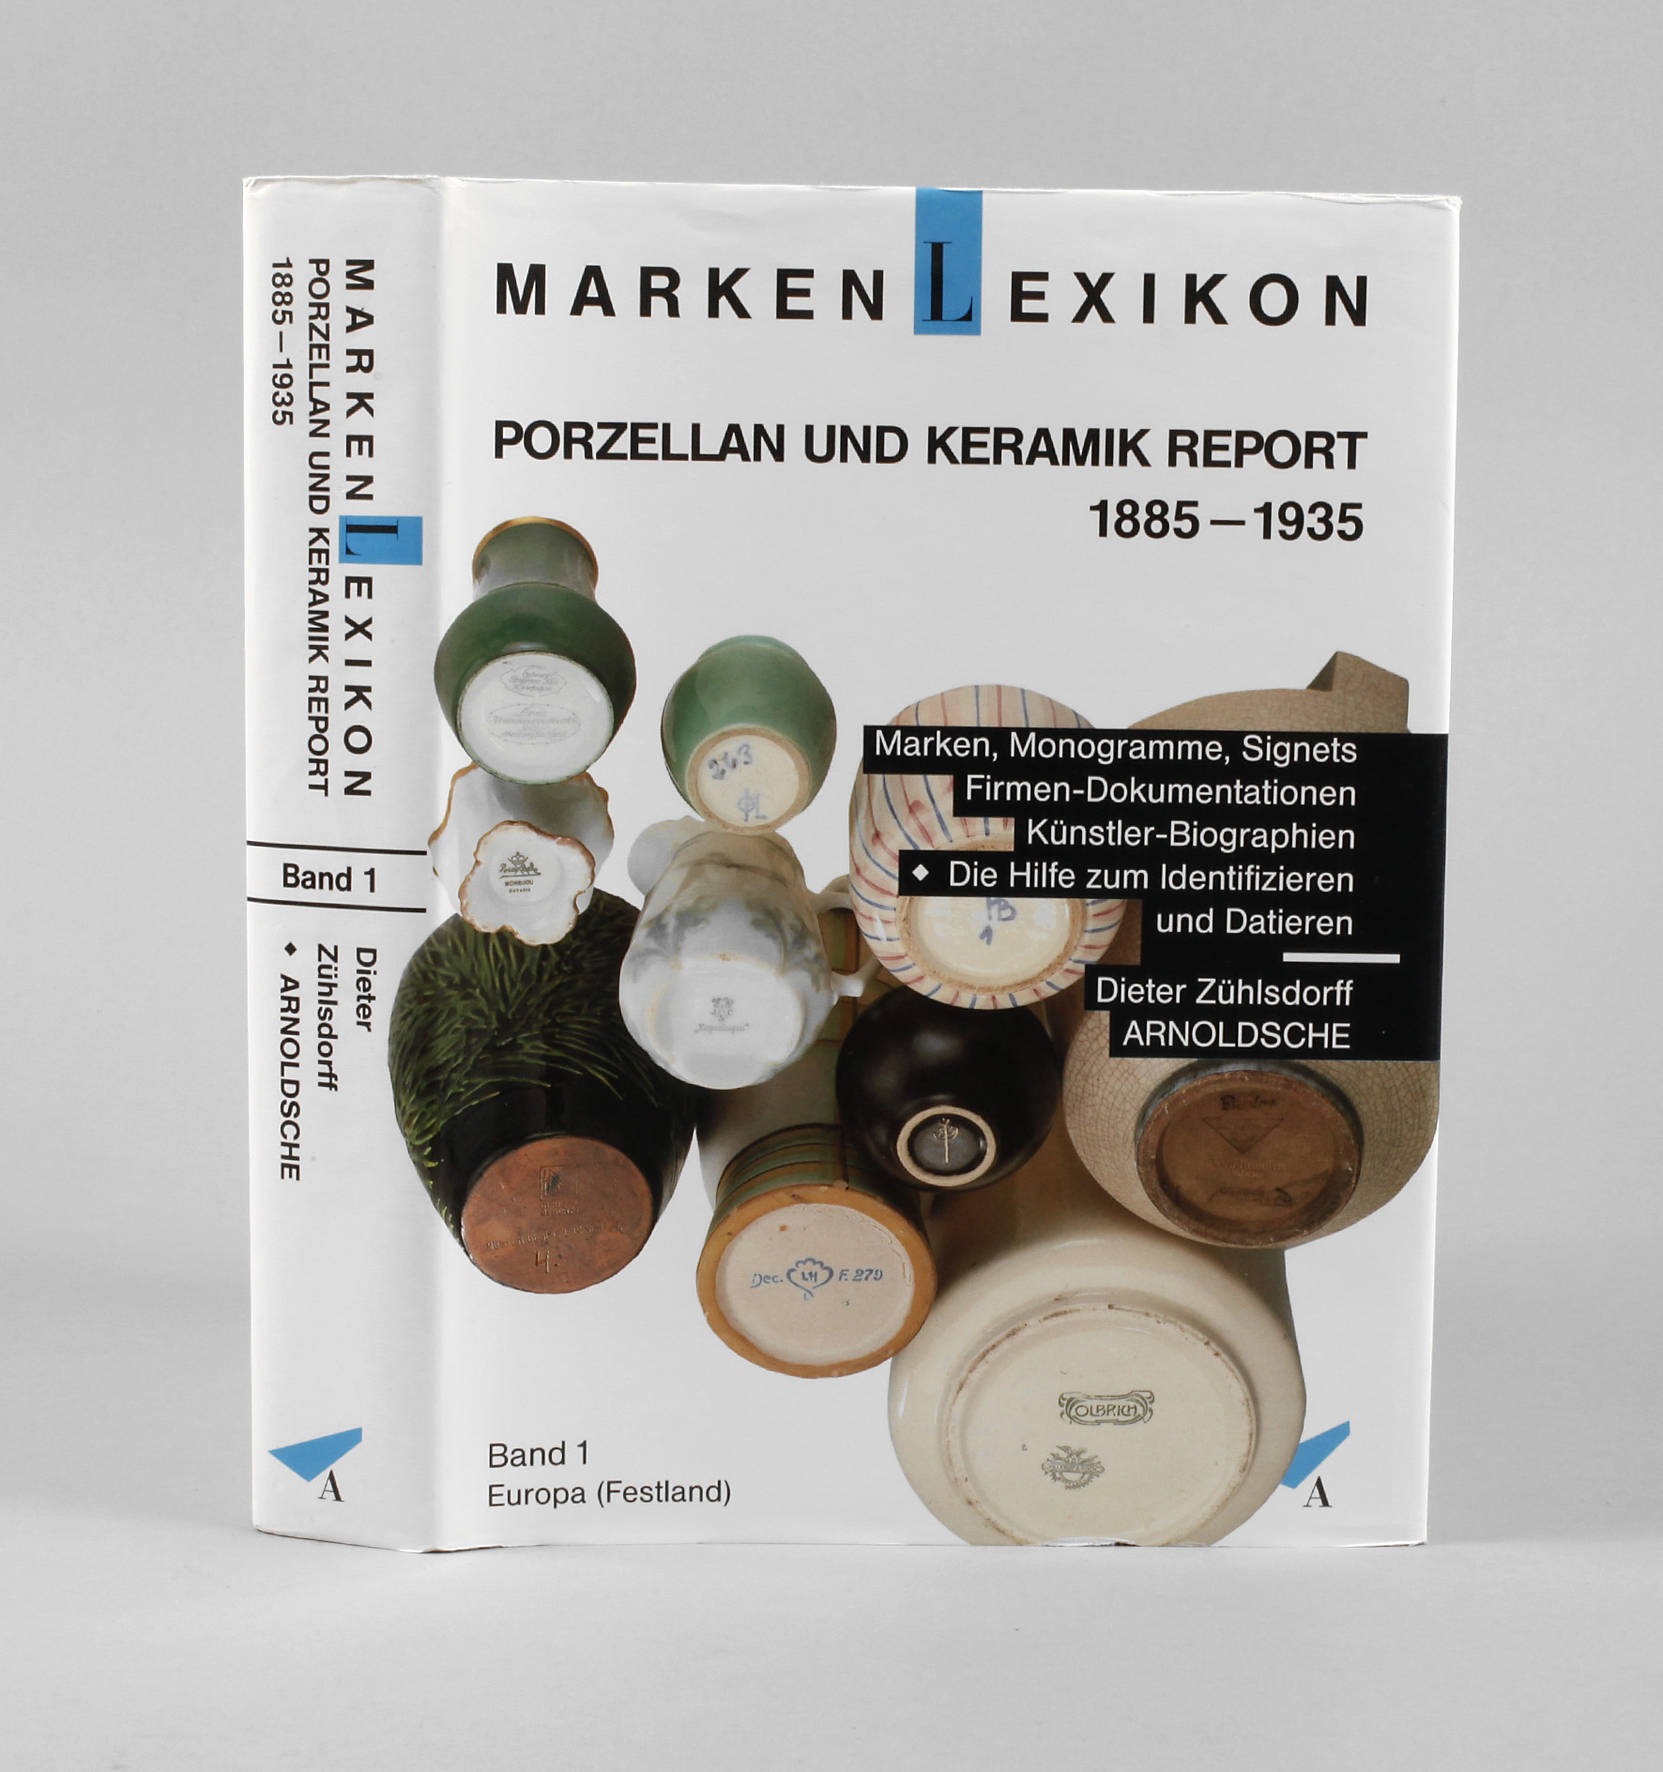 Markenlexikon Porzellan und Keramik